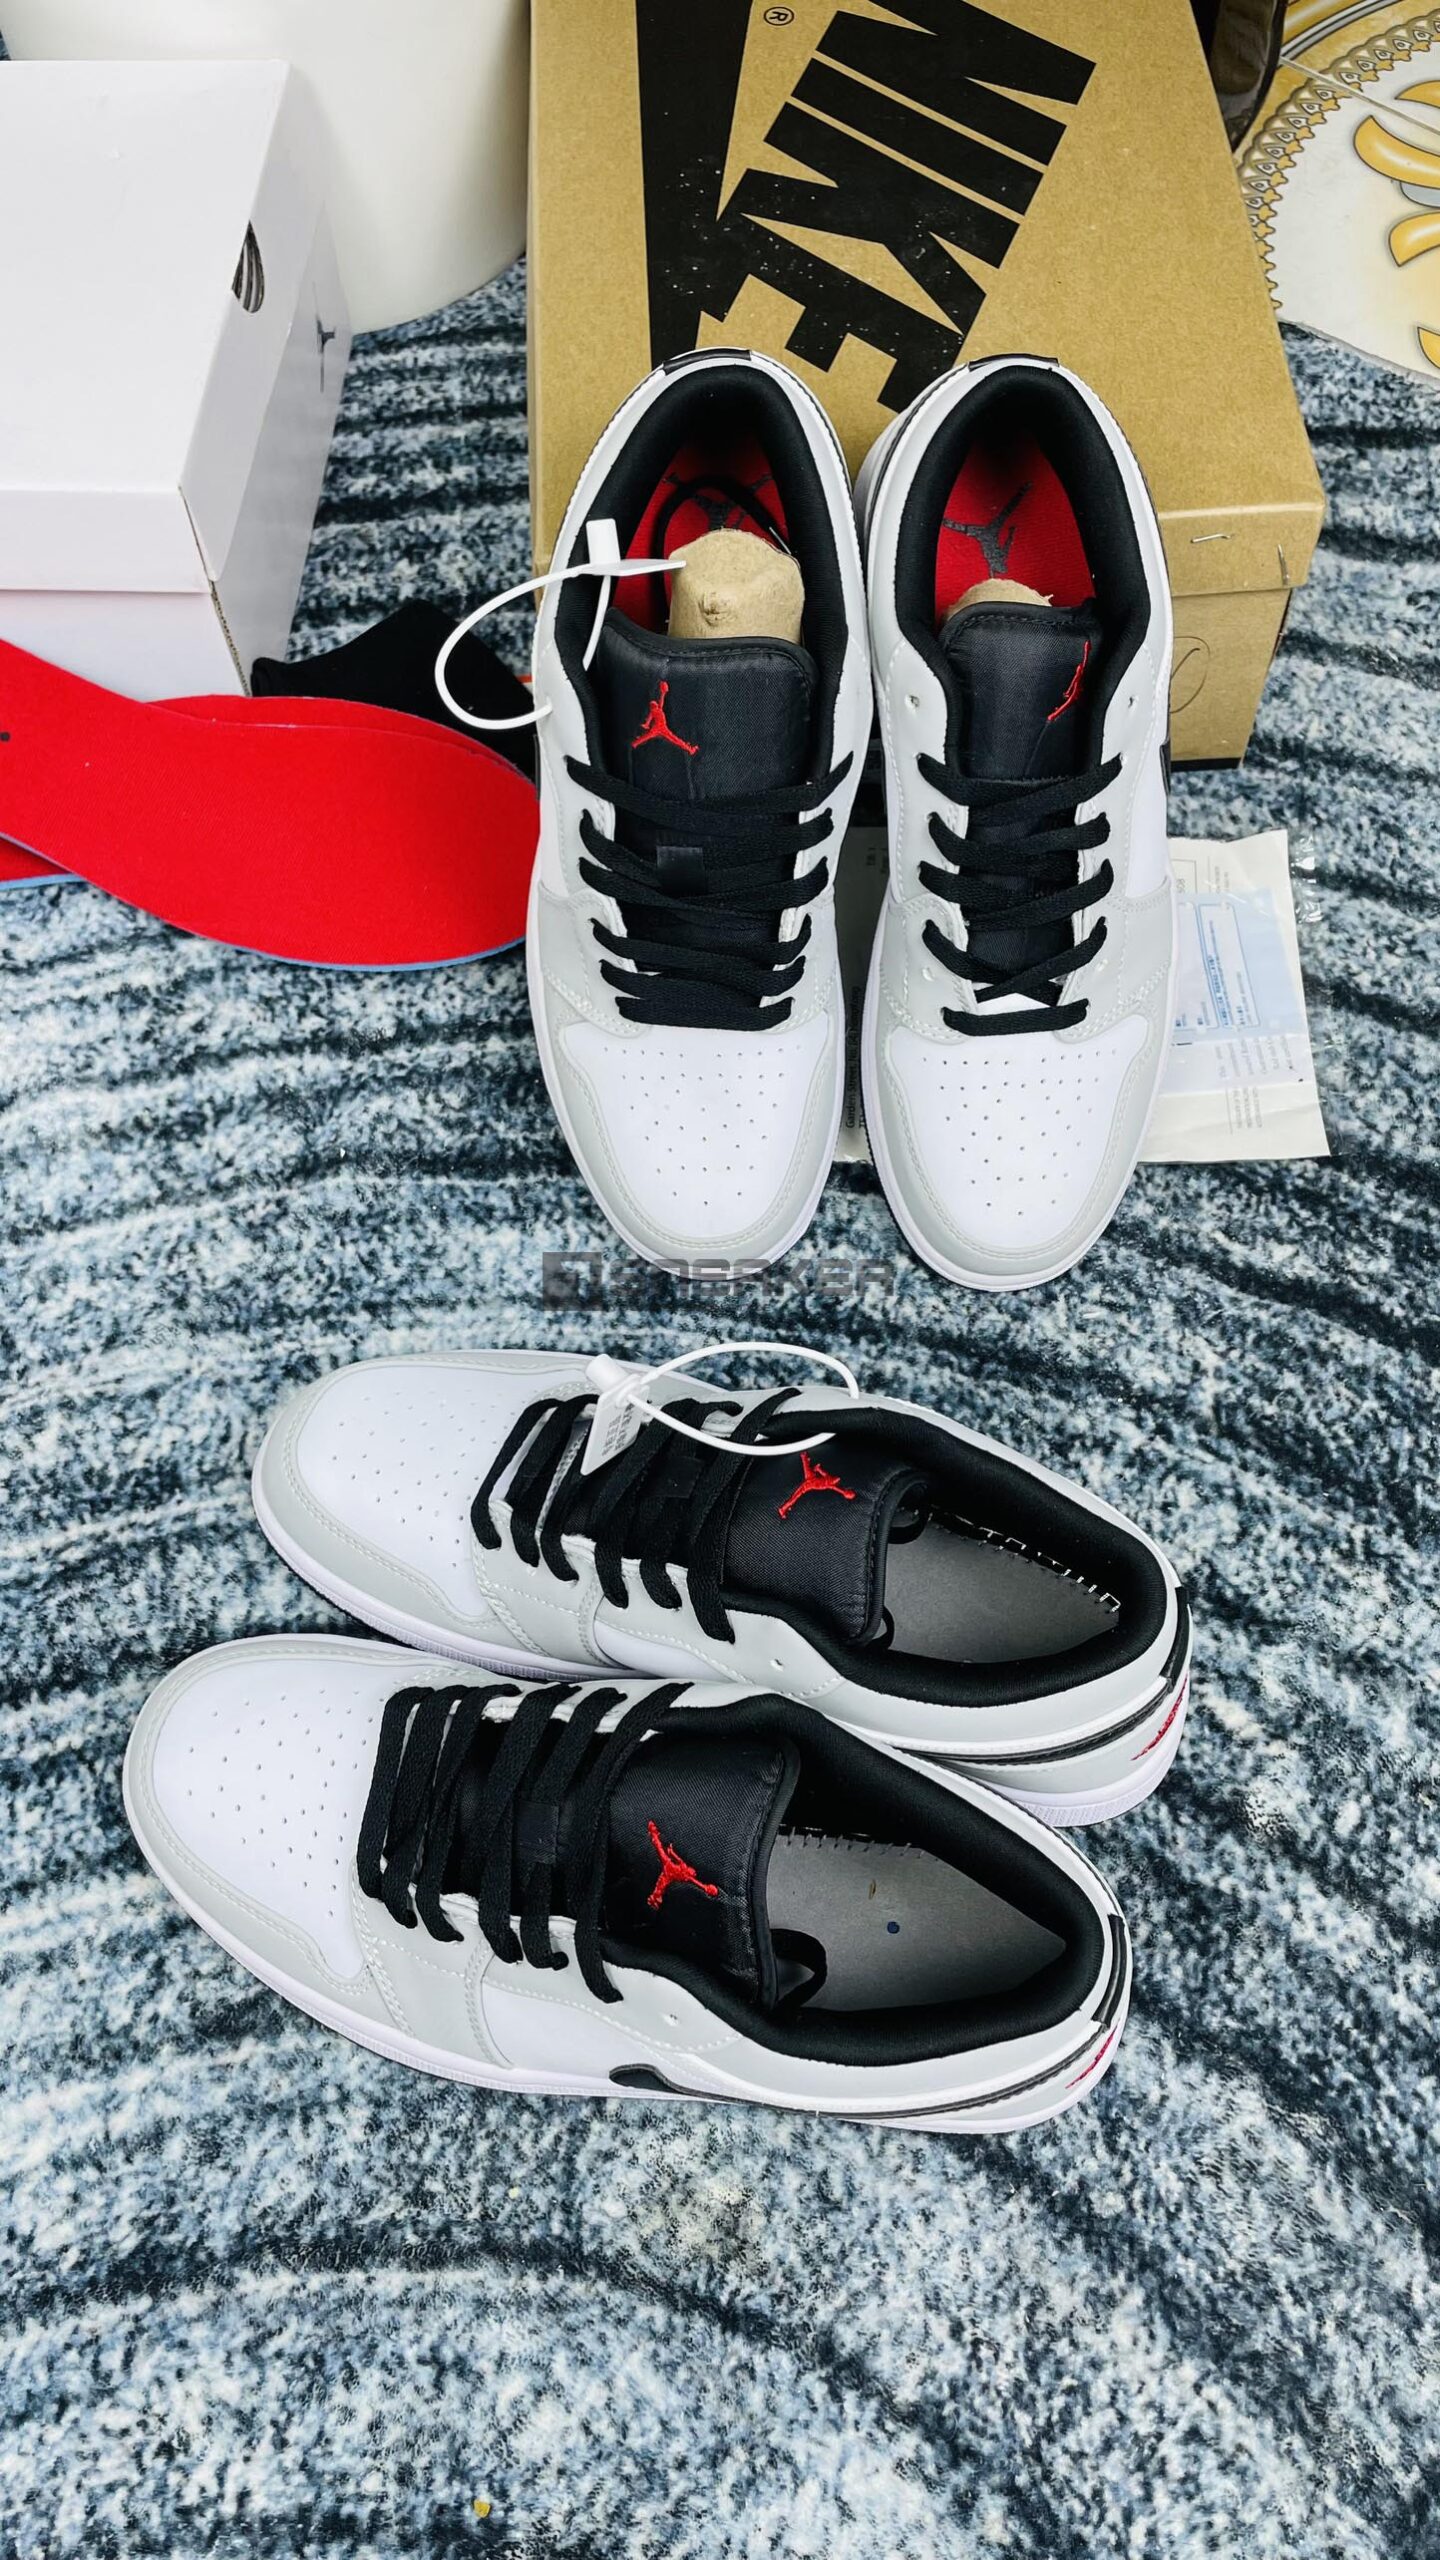 Nike Air Jordan 1 Low Light Smoke Grey REP 1:1 miếng lót đỏ may mắn cho người sở hữu em nó